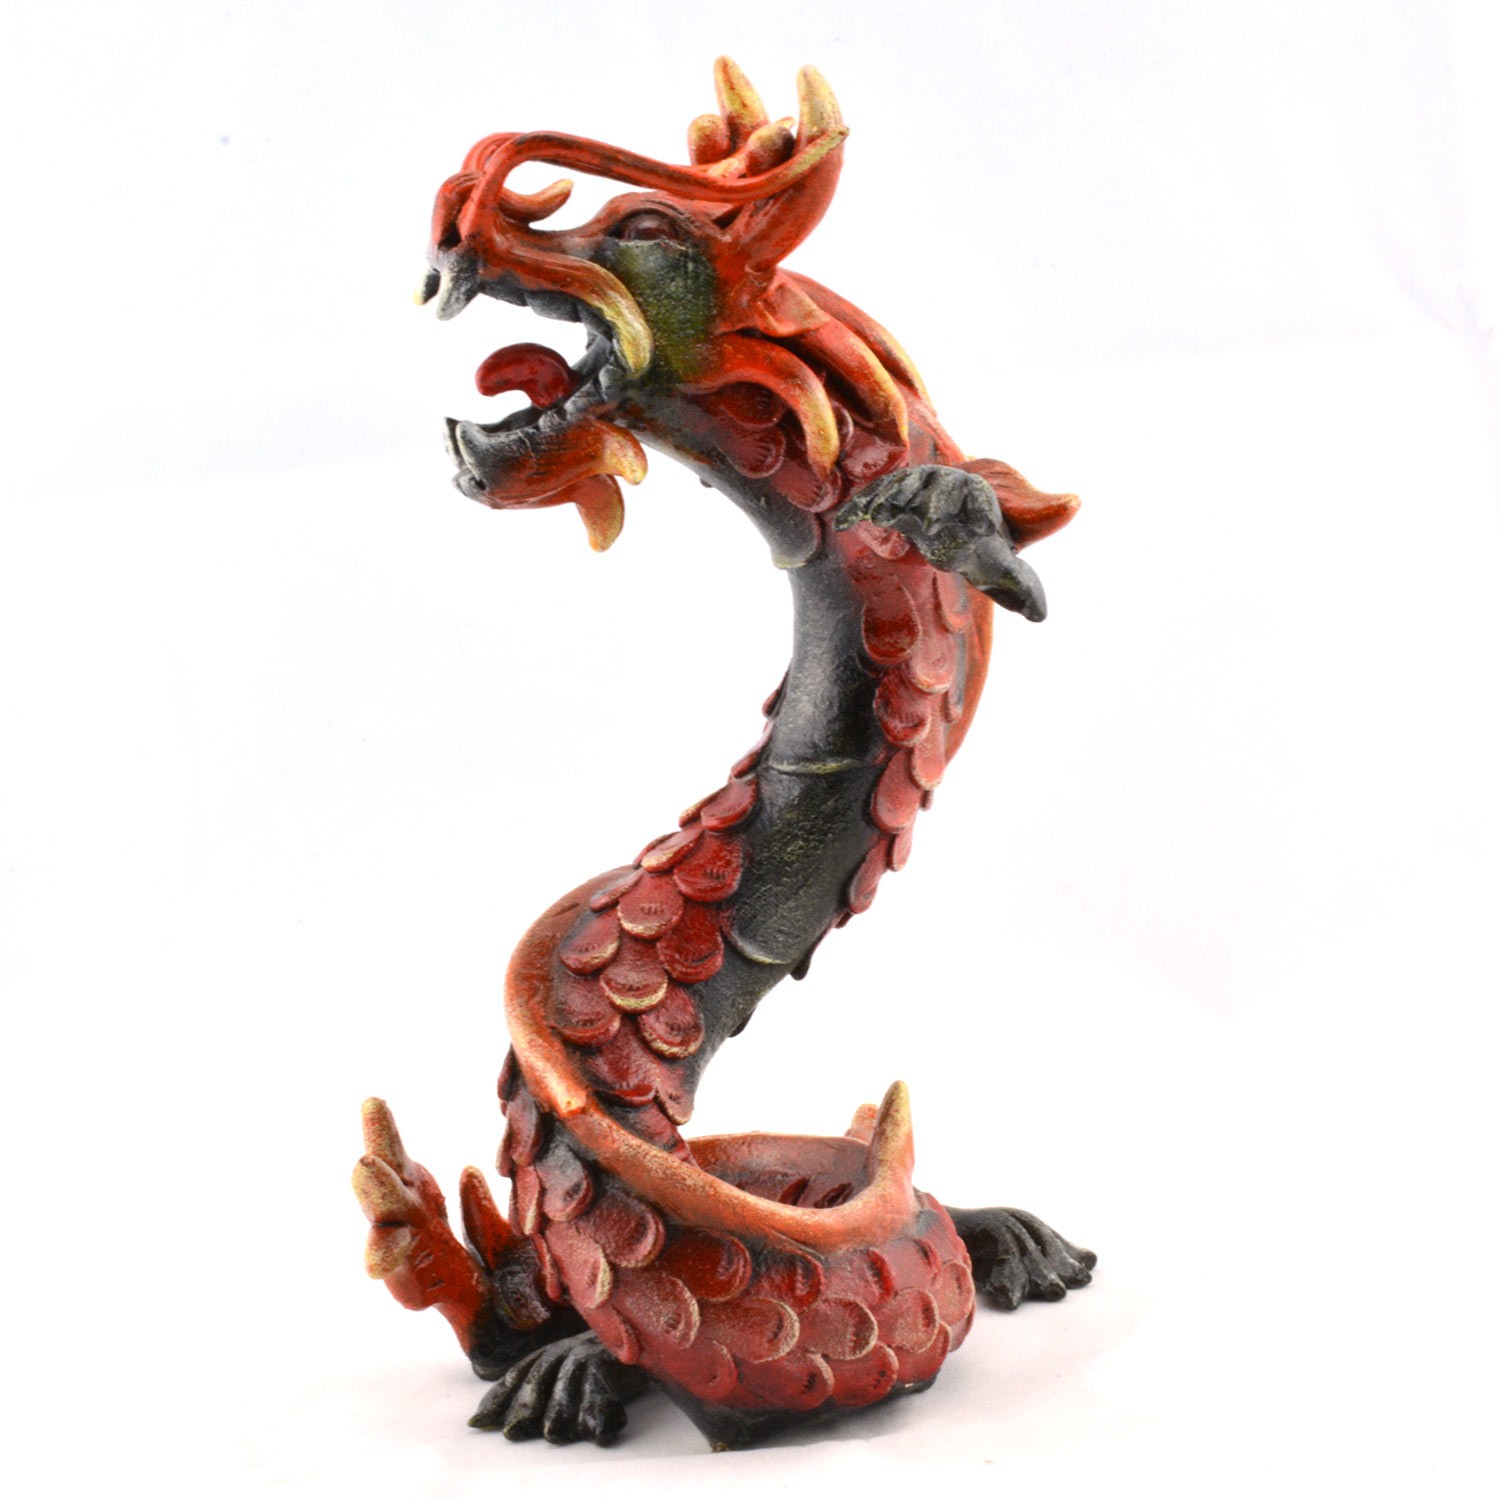 https://www.shoppingzoneplus.com/media/catalog/product/cache/1/image/1500x/9df78eab33525d08d6e5fb8d27136e95/r/e/red-carved-wooden-dragon-coiled-stance-sculptured-statuette6.jpg